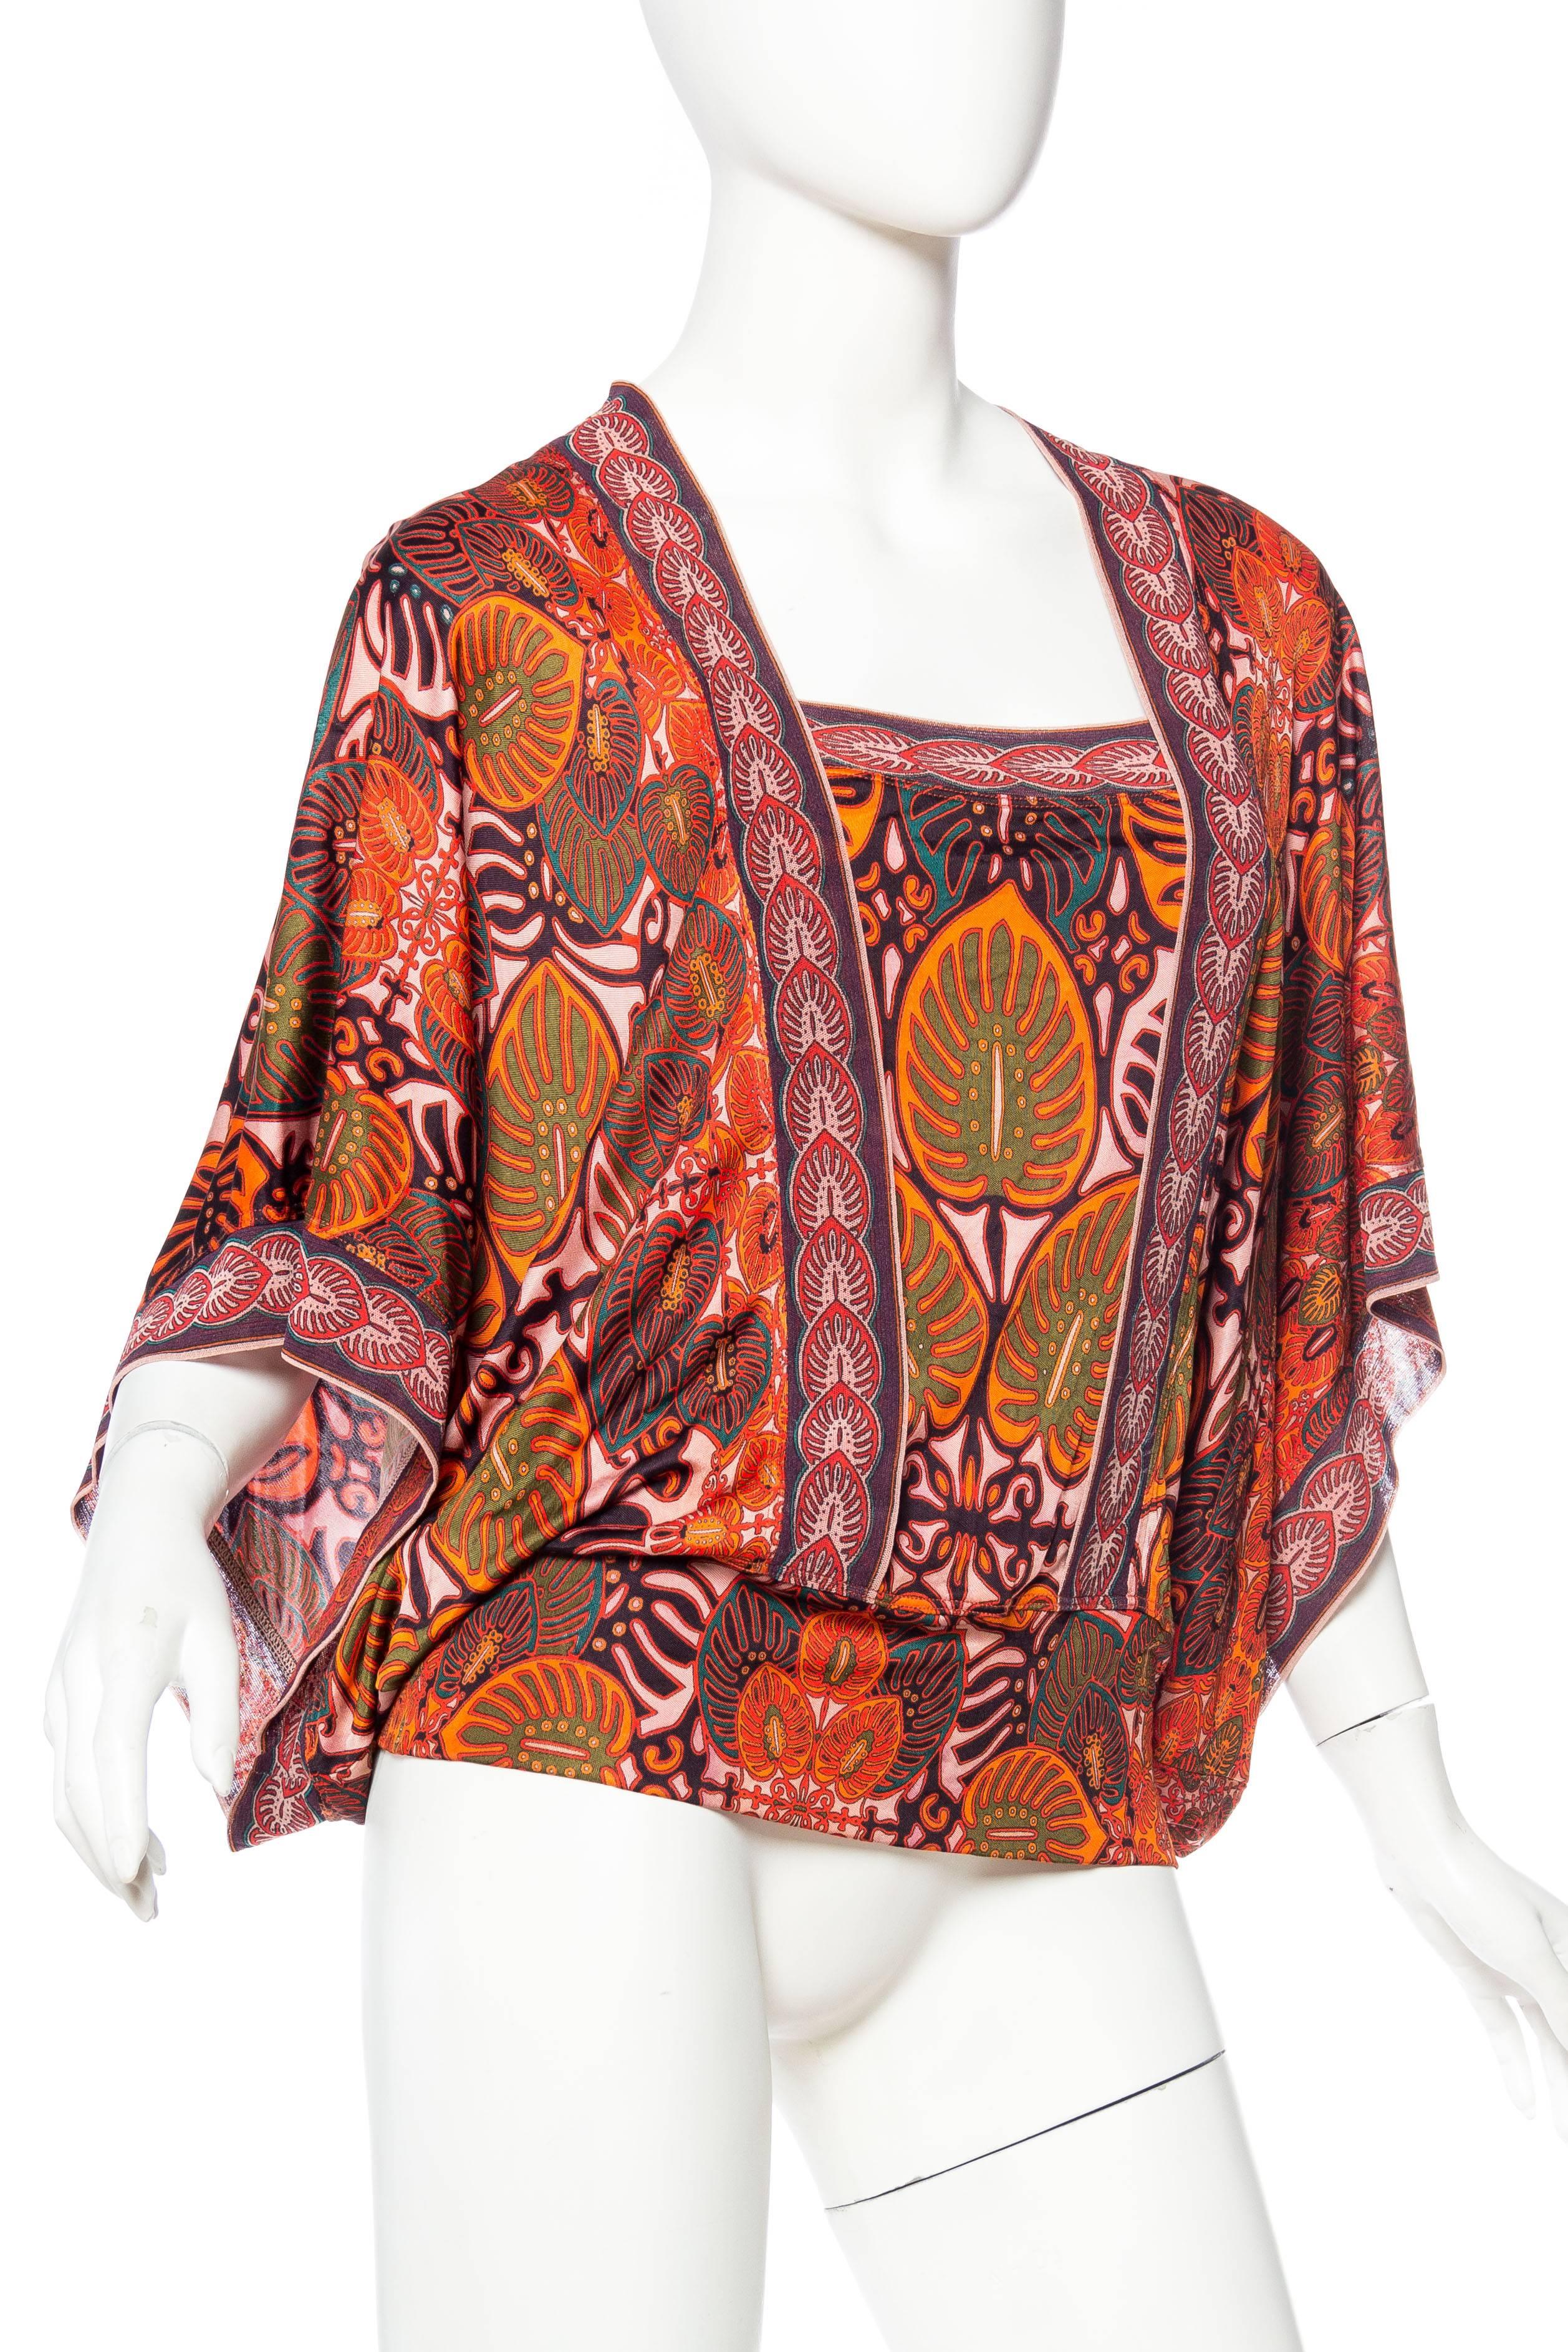 Women's Jean Paul Gaultier Kimono Sleeve Top